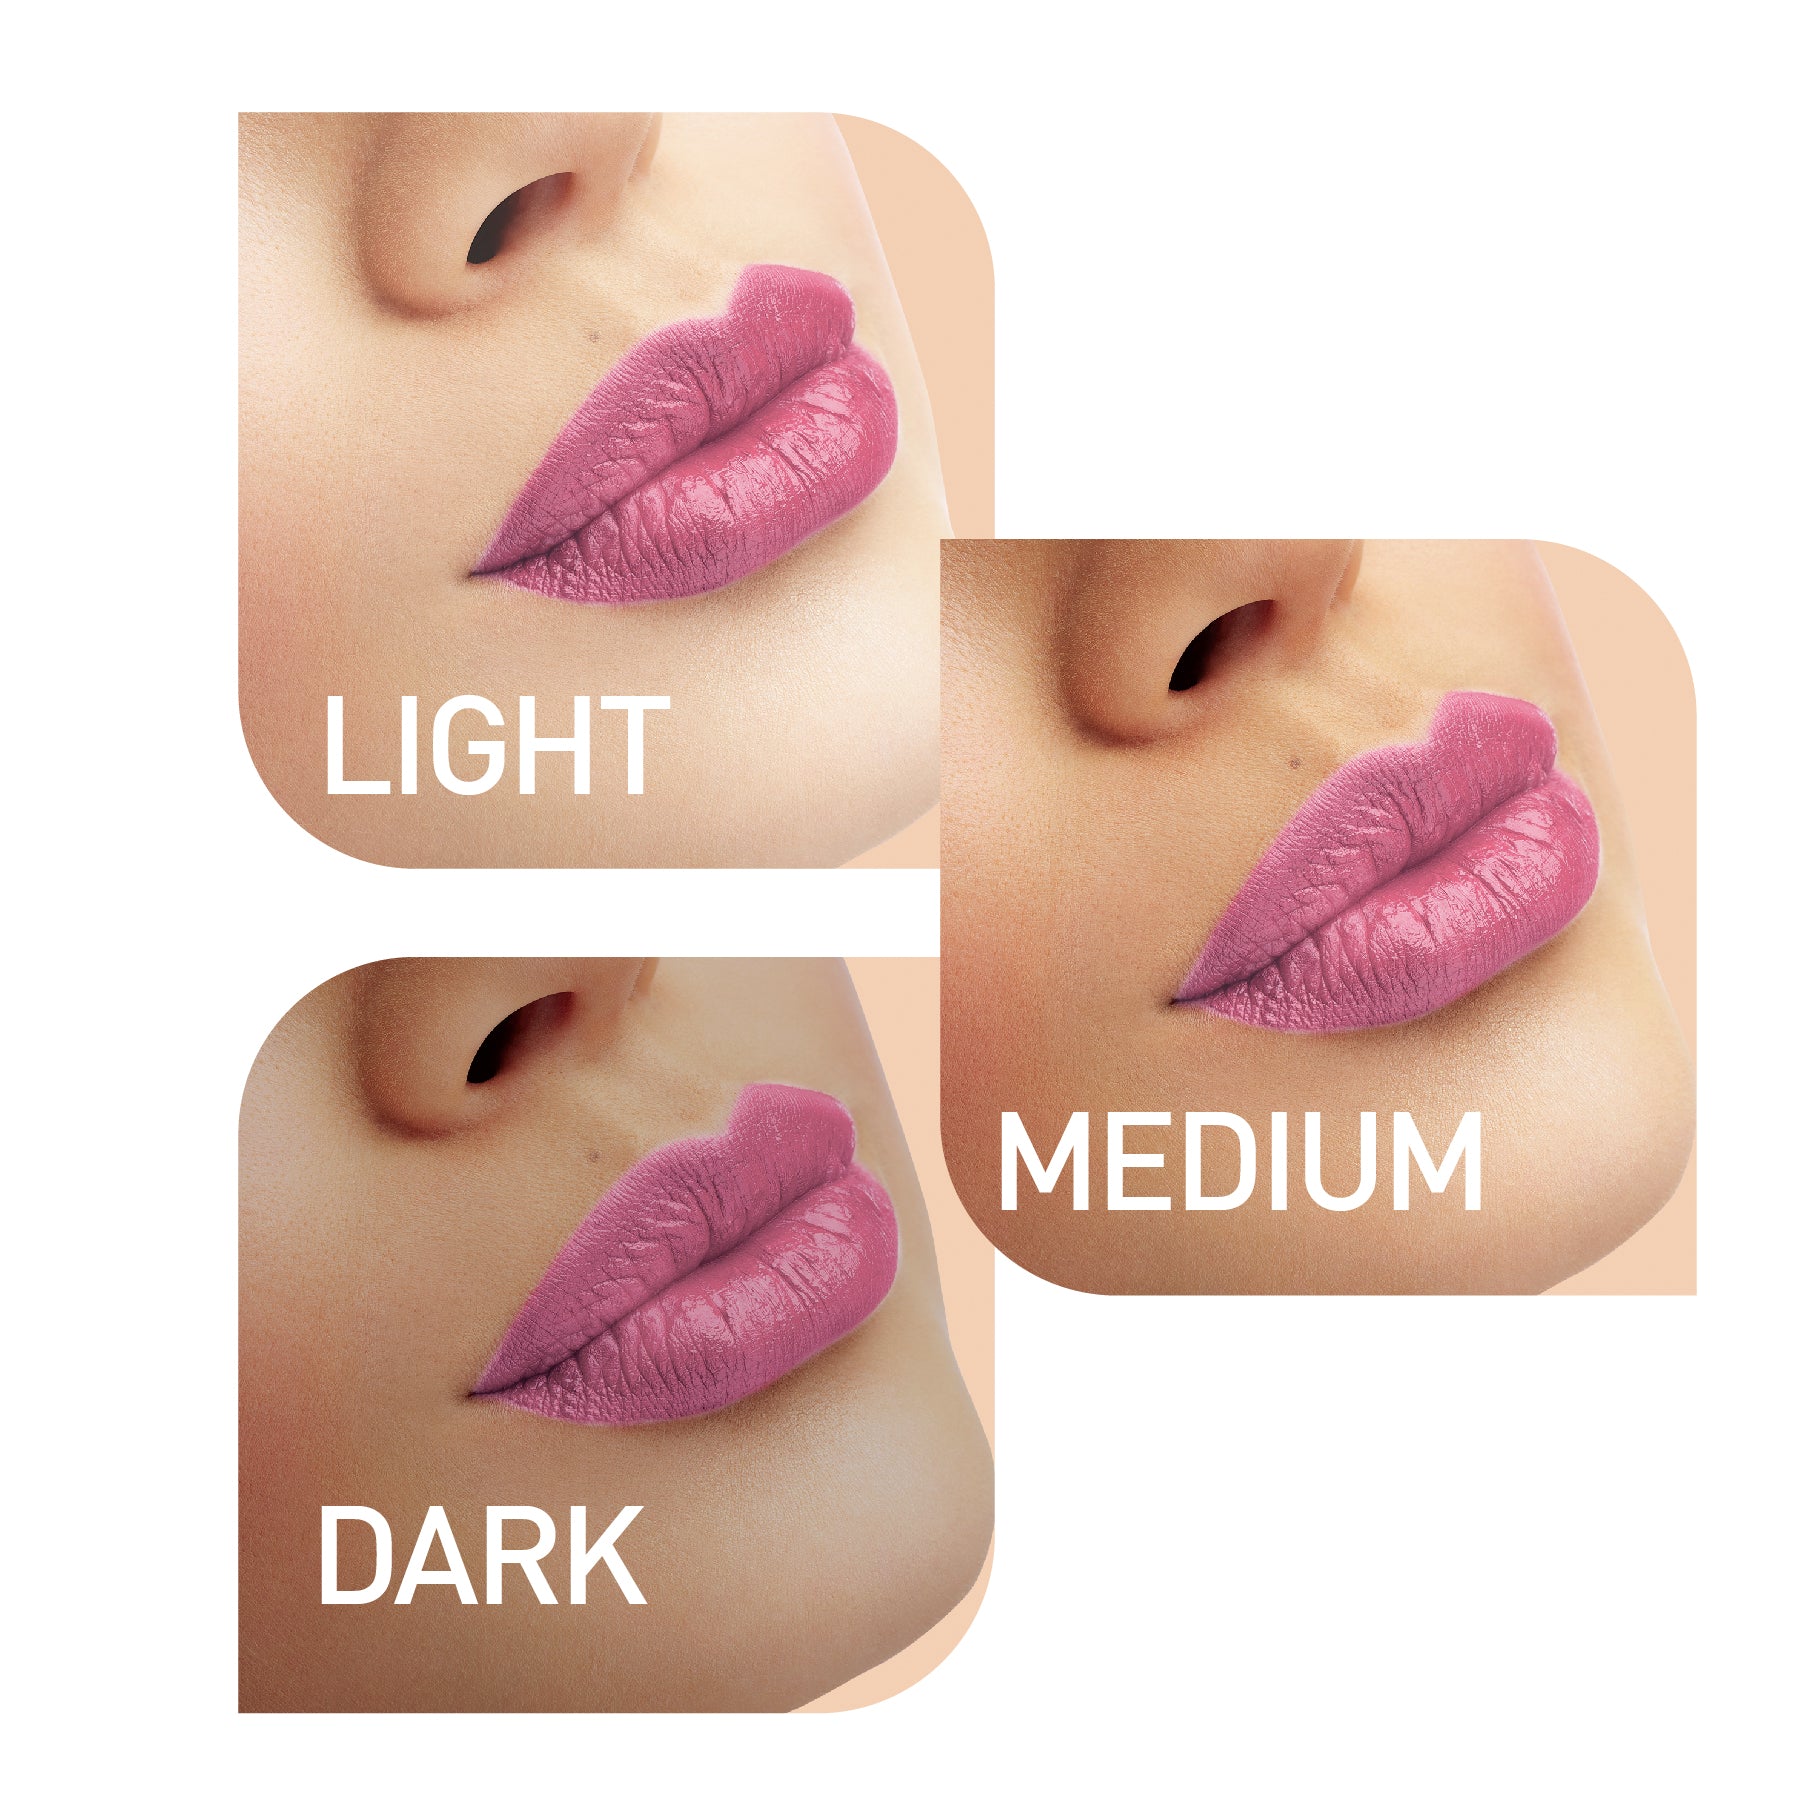 MyGlamm LIT Liquid Matte Lipstick-Ghosted-3ml